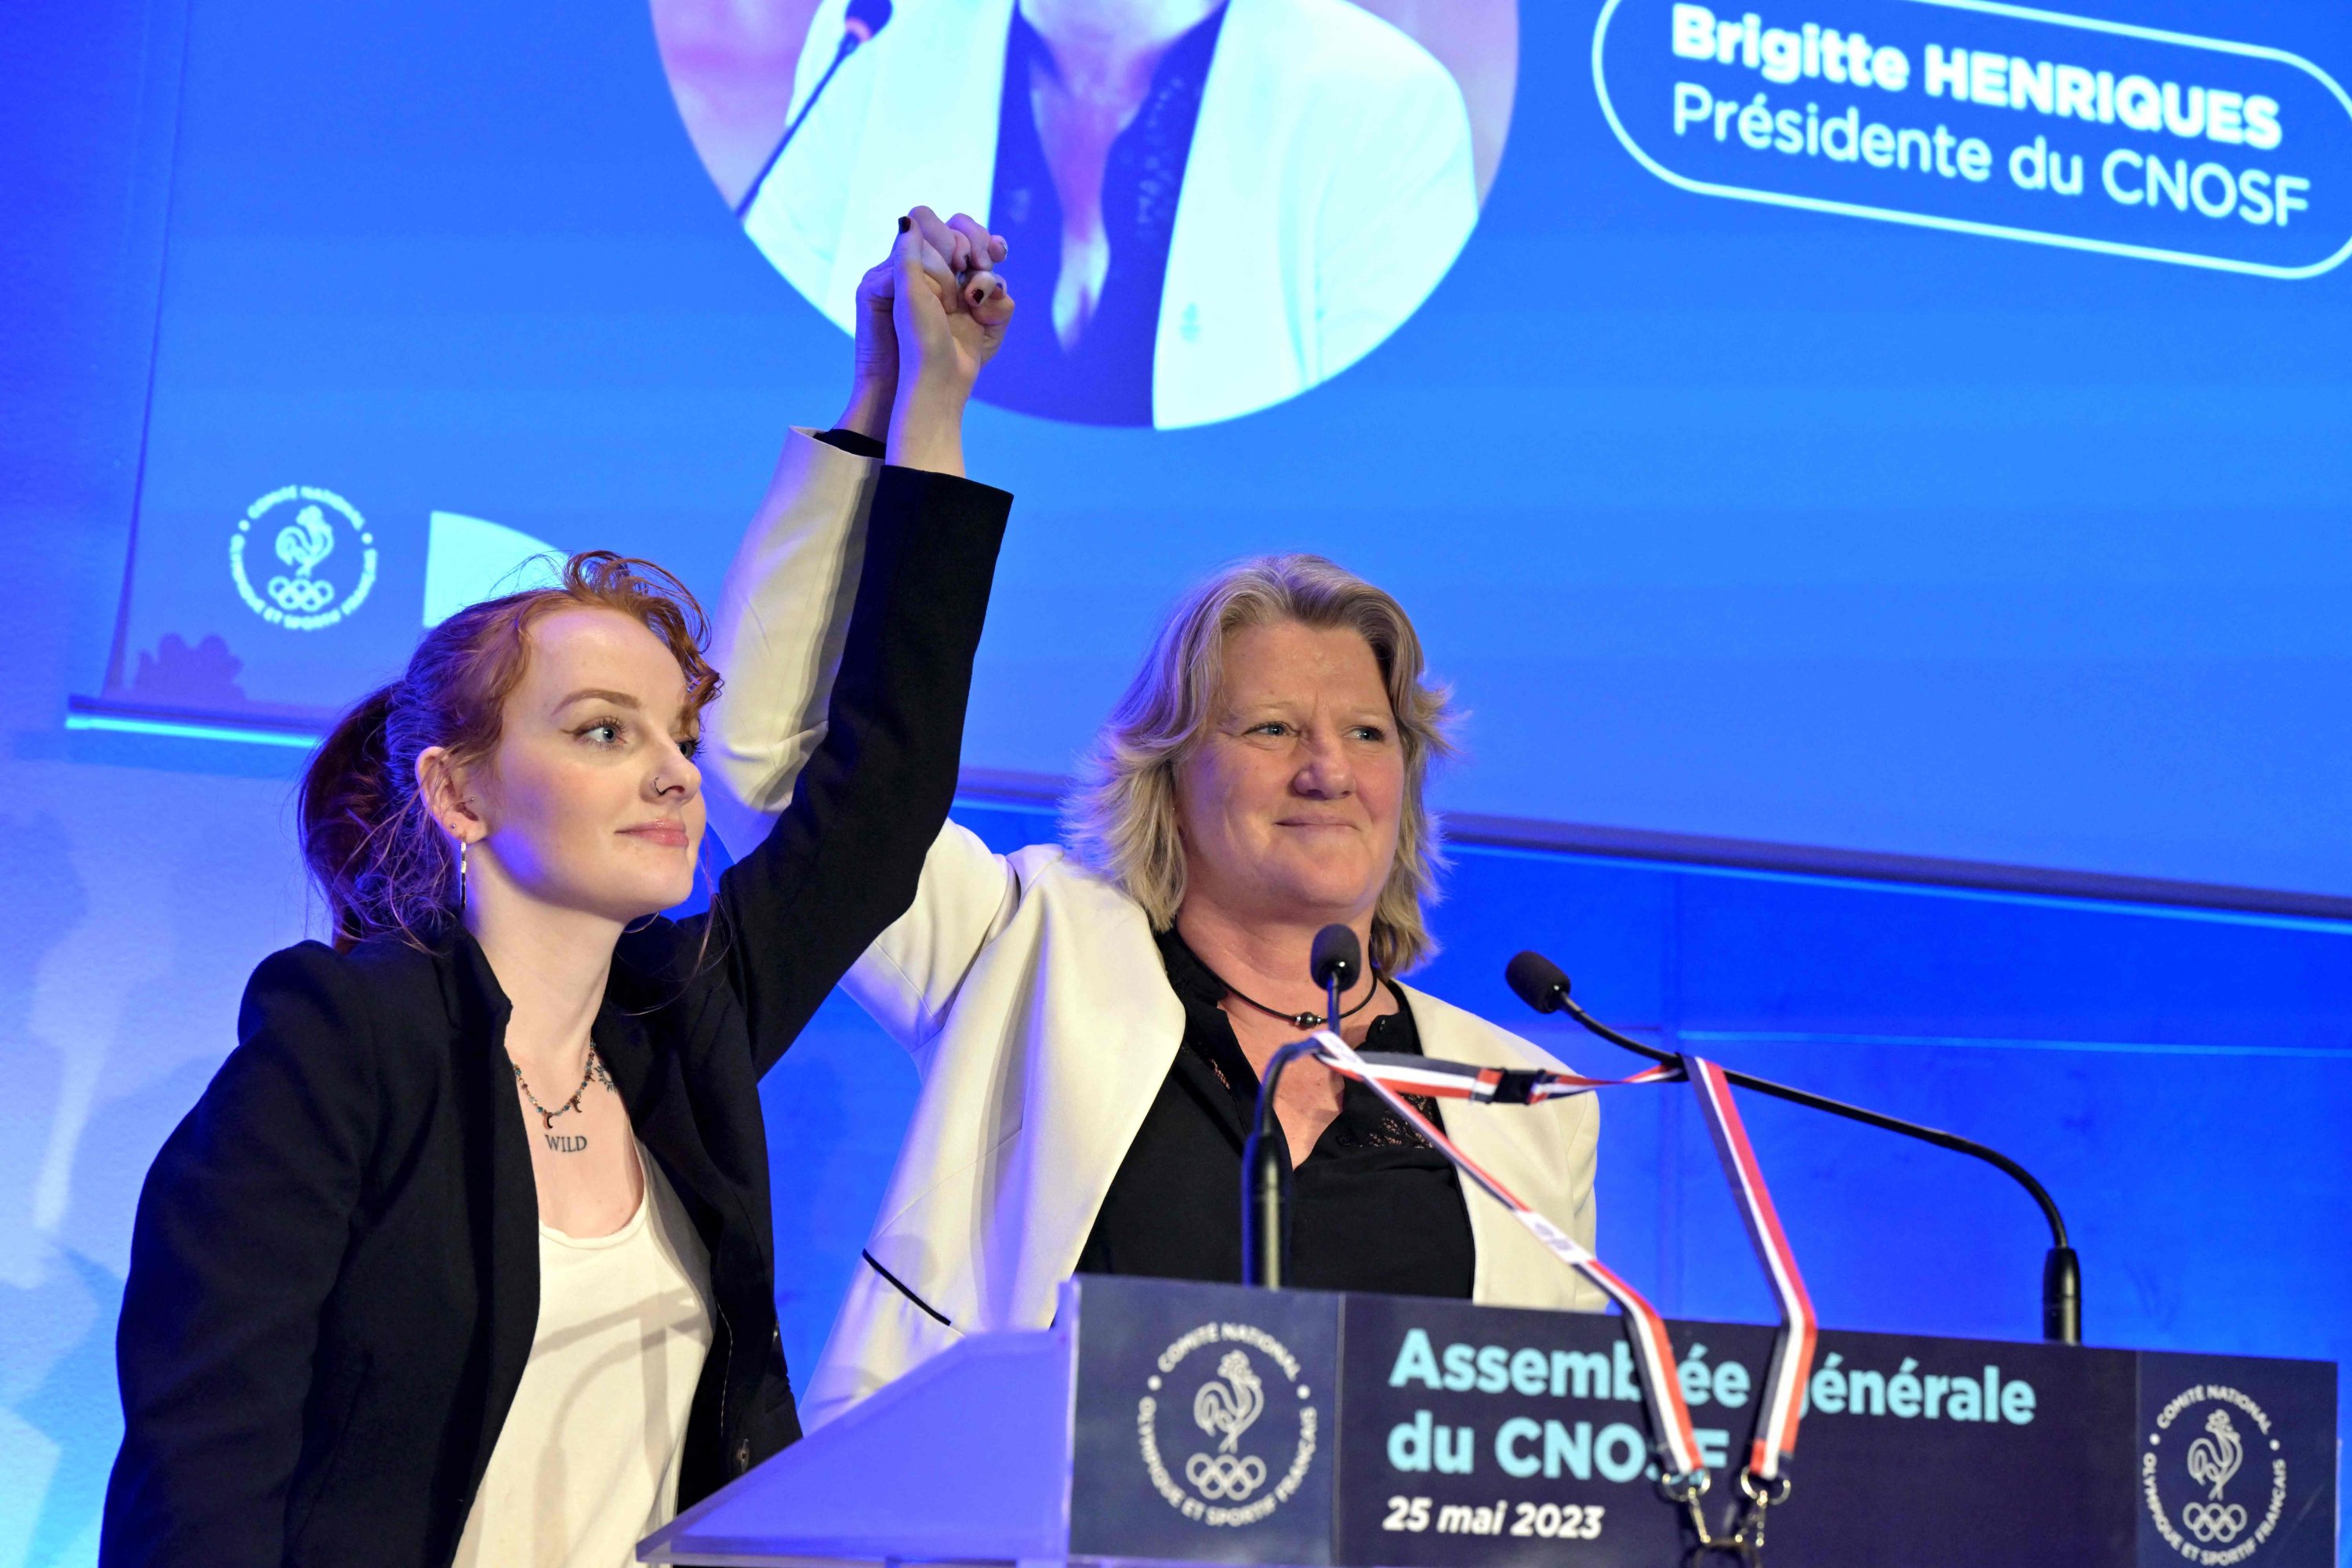 Presiden Komite Olimpiade Prancis (CNOSF) Brigitte Henriques (kanan) memegang tangan salah satu putrinya dalam pelukannya selama Sidang Umum organisasi tersebut, Paris, Prancis, 25 Mei 2023. (Foto AFP)